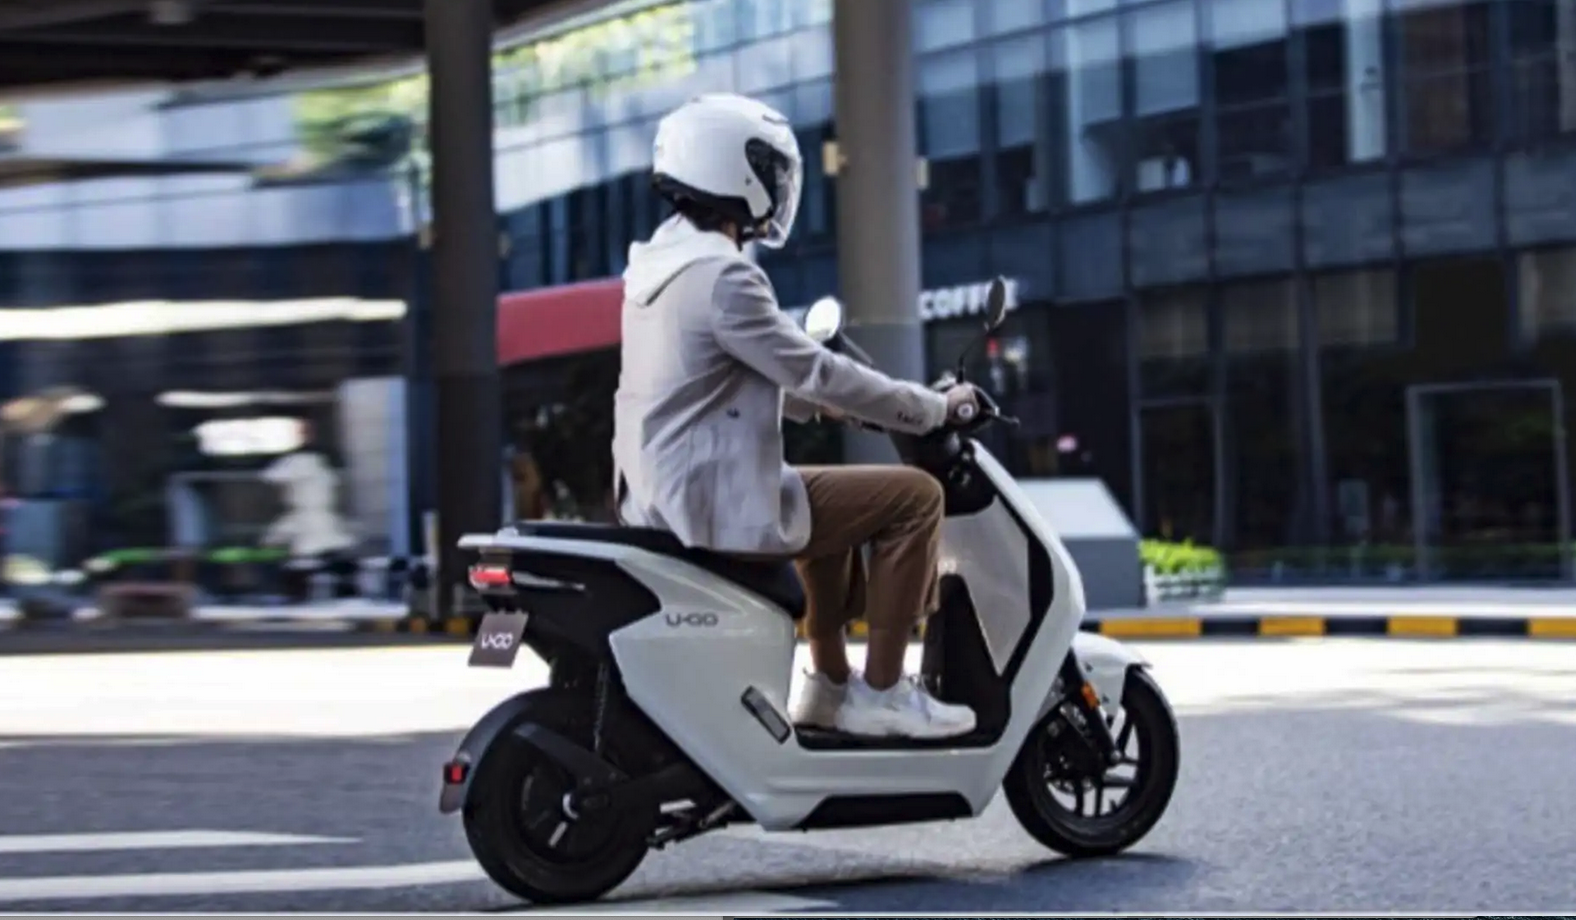 Honda lanceert elektrische U-GO-scooter onder €1.000 in China